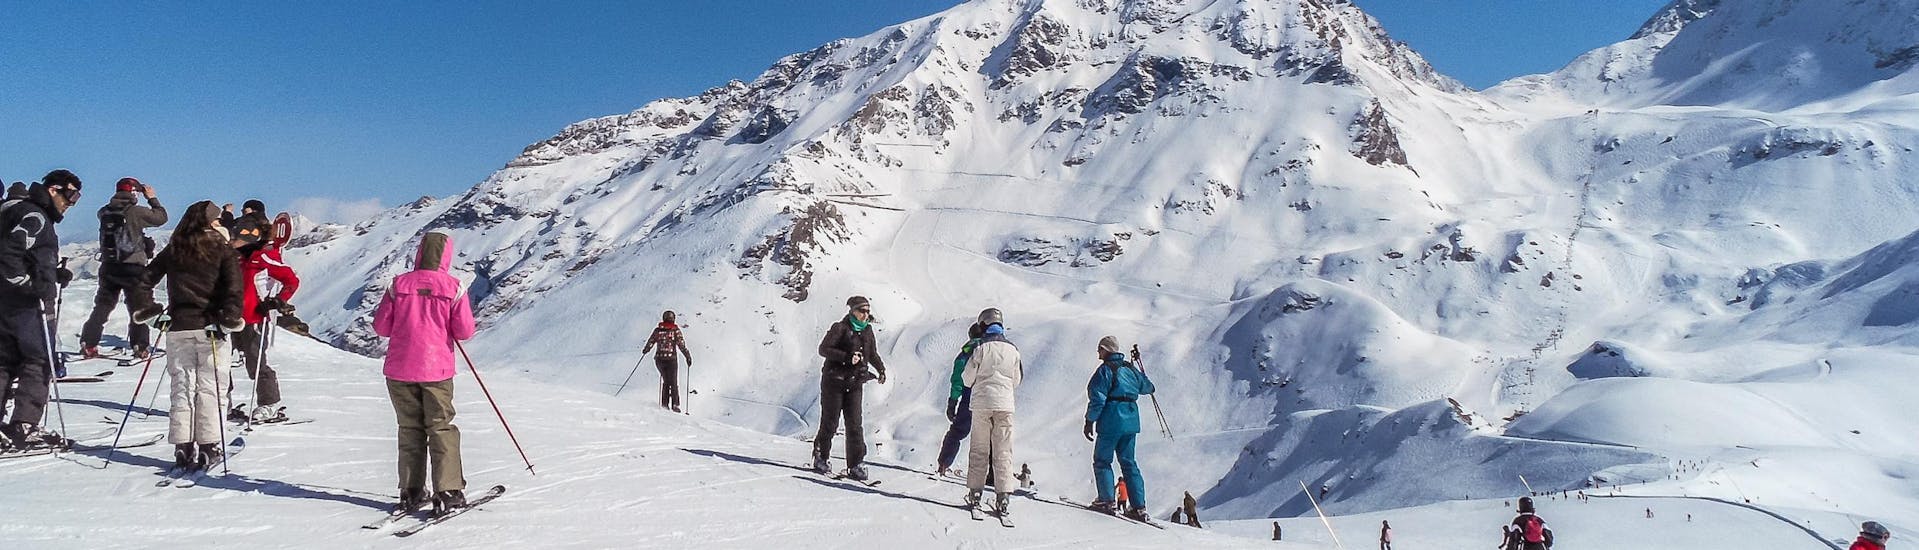 Vue sur le paysage de montagne ensoleillé de Arc 1950 où les écoles de ski locales proposent leurs cours de ski.